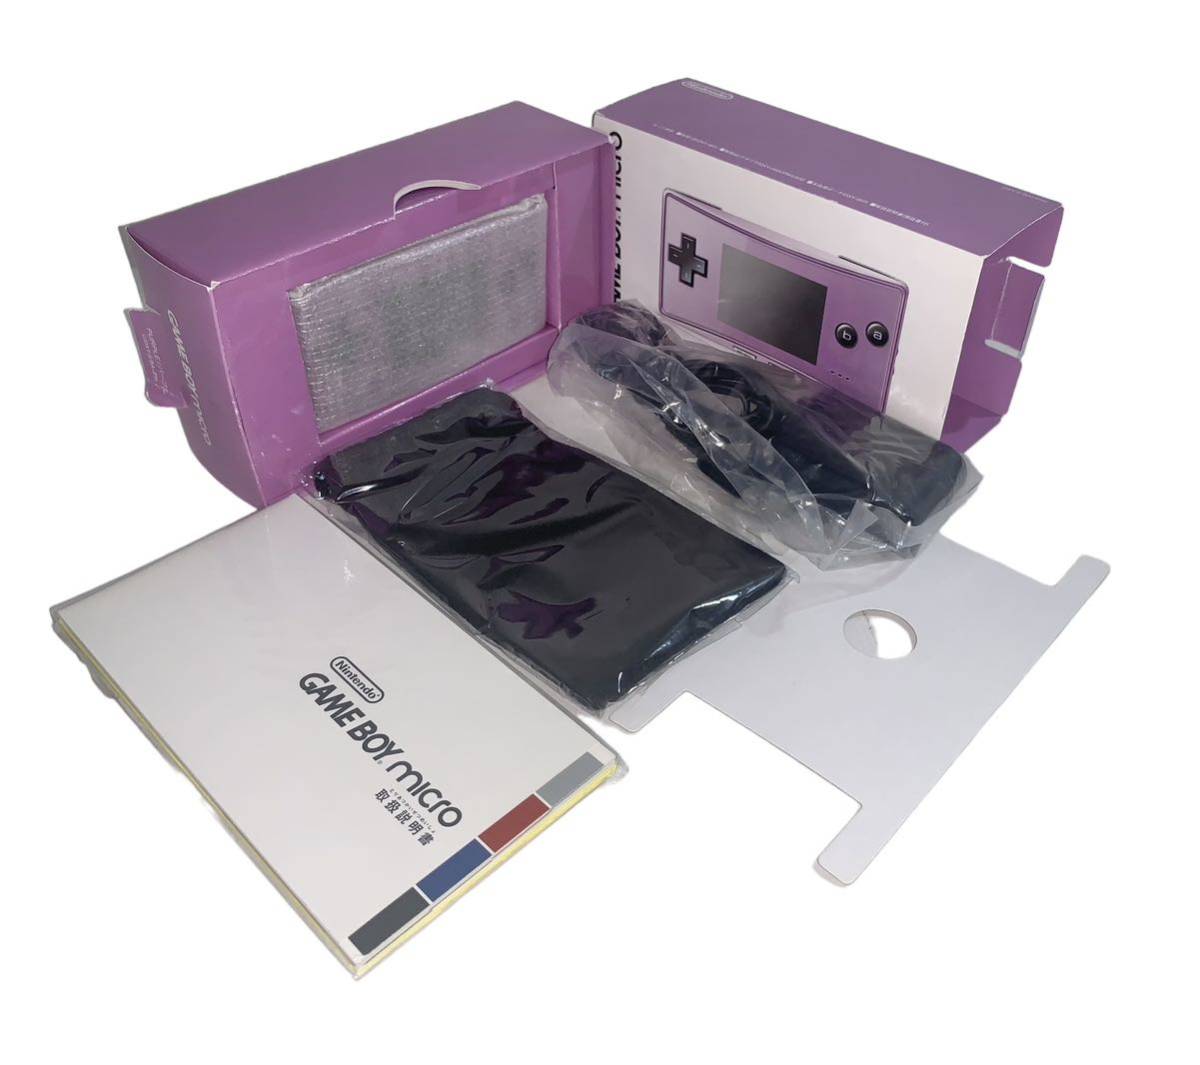  Game Boy Micro body micro purple 